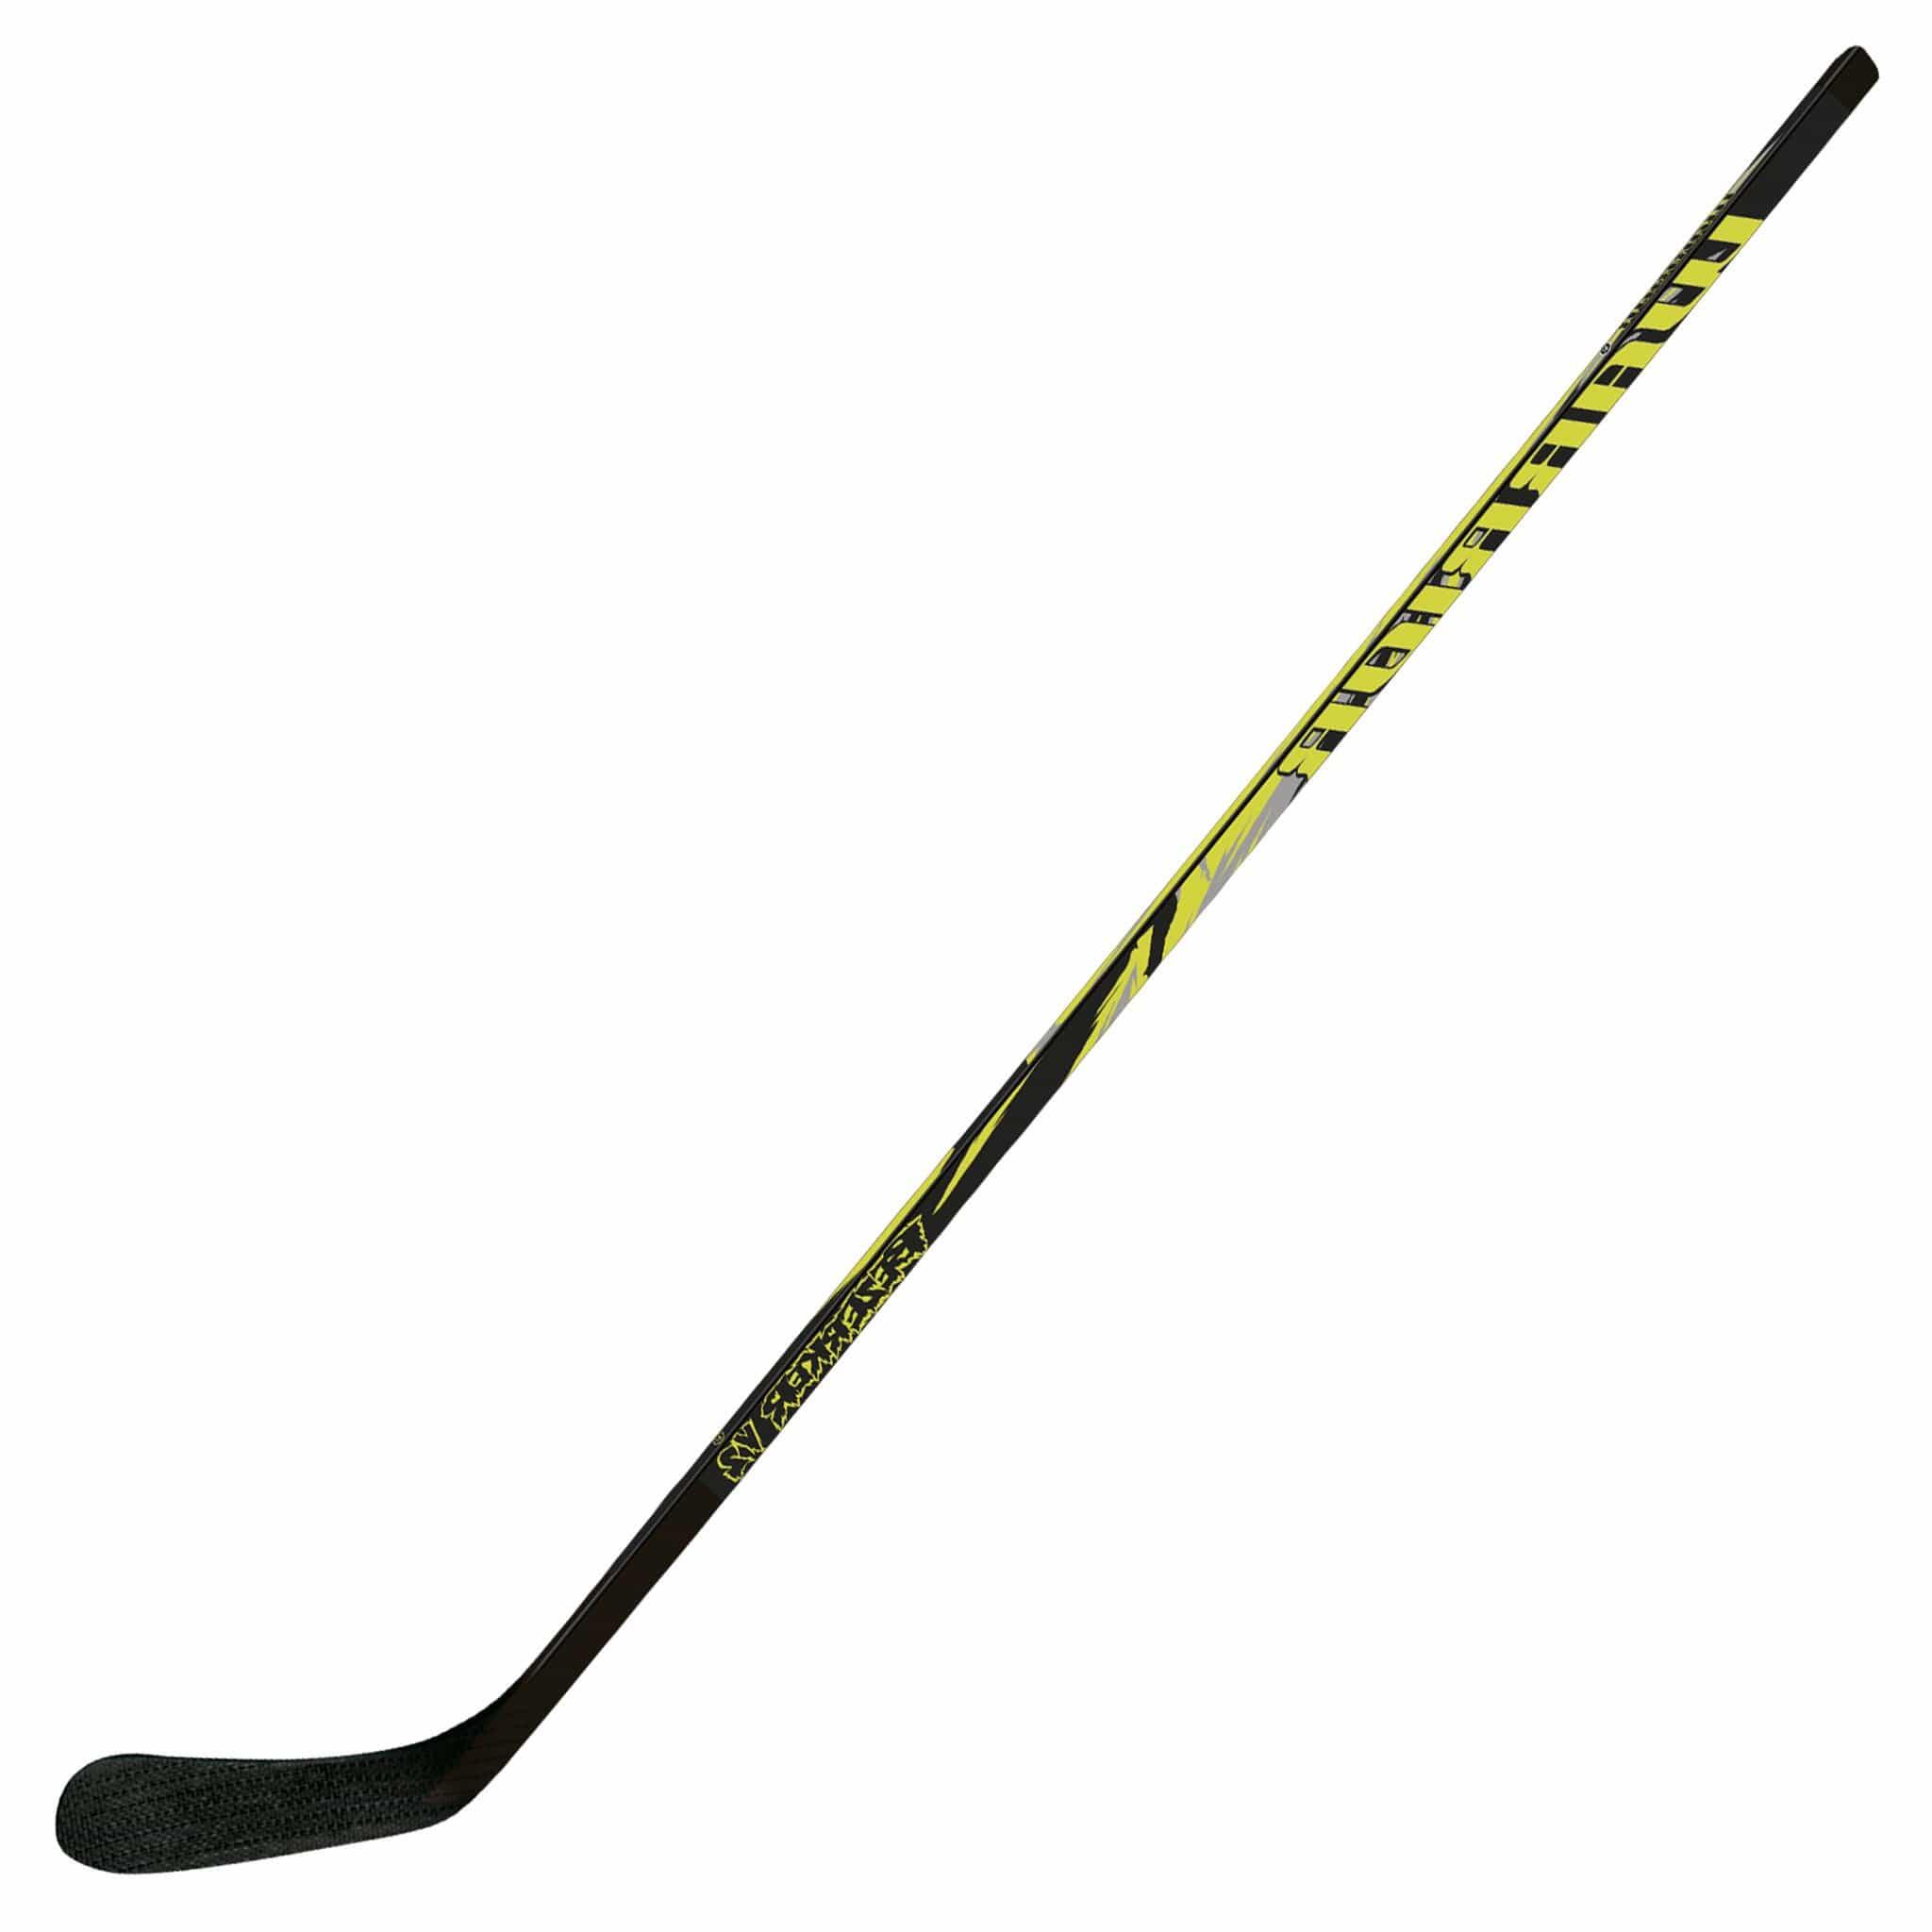 Warrior Bezerker V2 Wooden Hockey Stick - Senior Left Hand 1/1